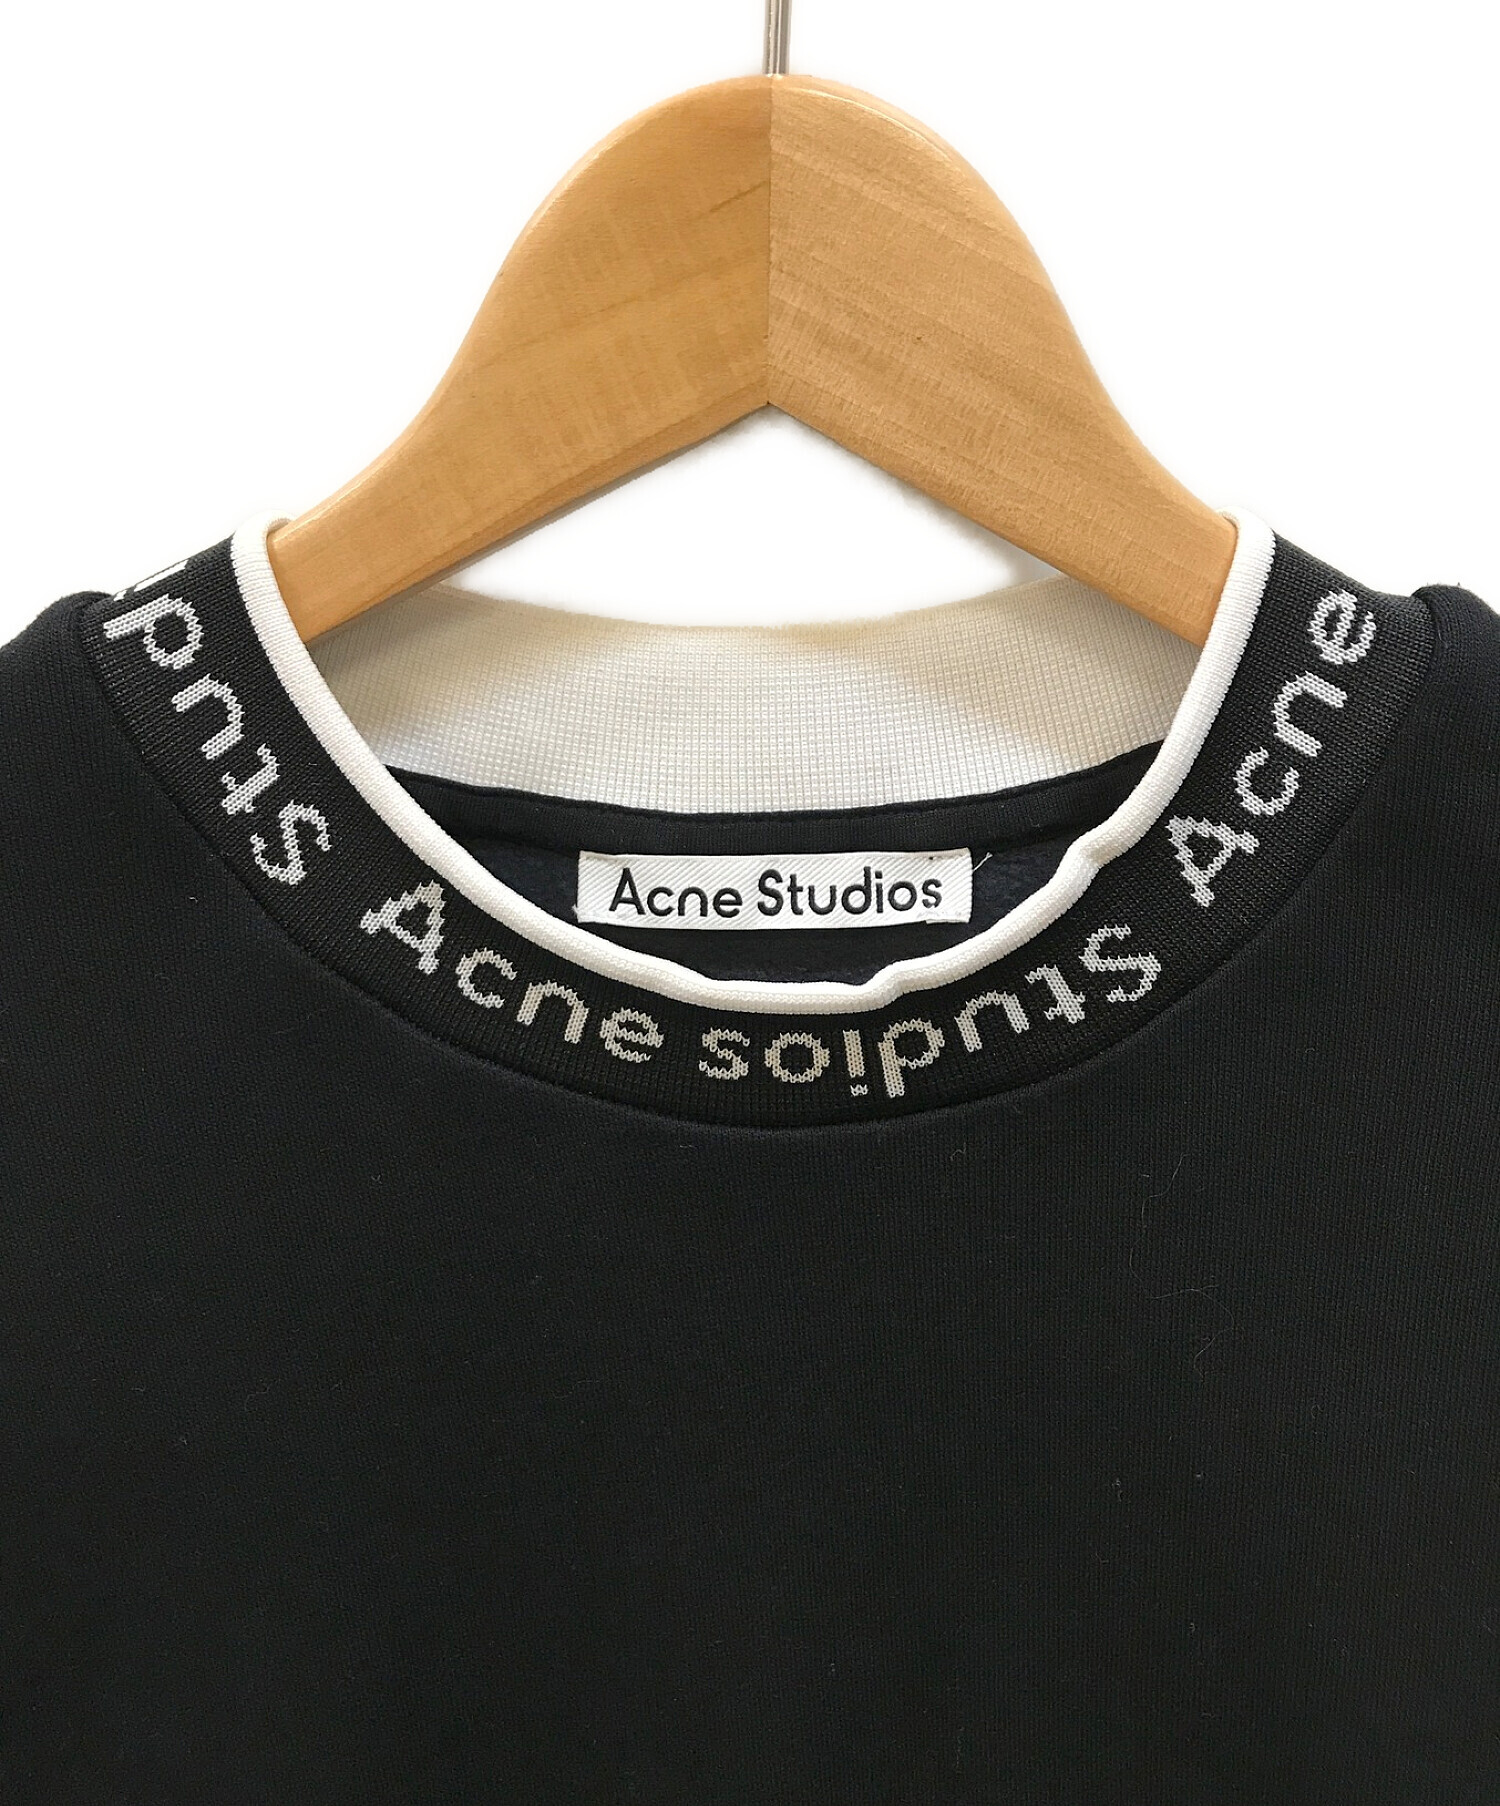 Acne studios (アクネストゥディオズ) カラーロゴスウェット ブラック サイズ:XS